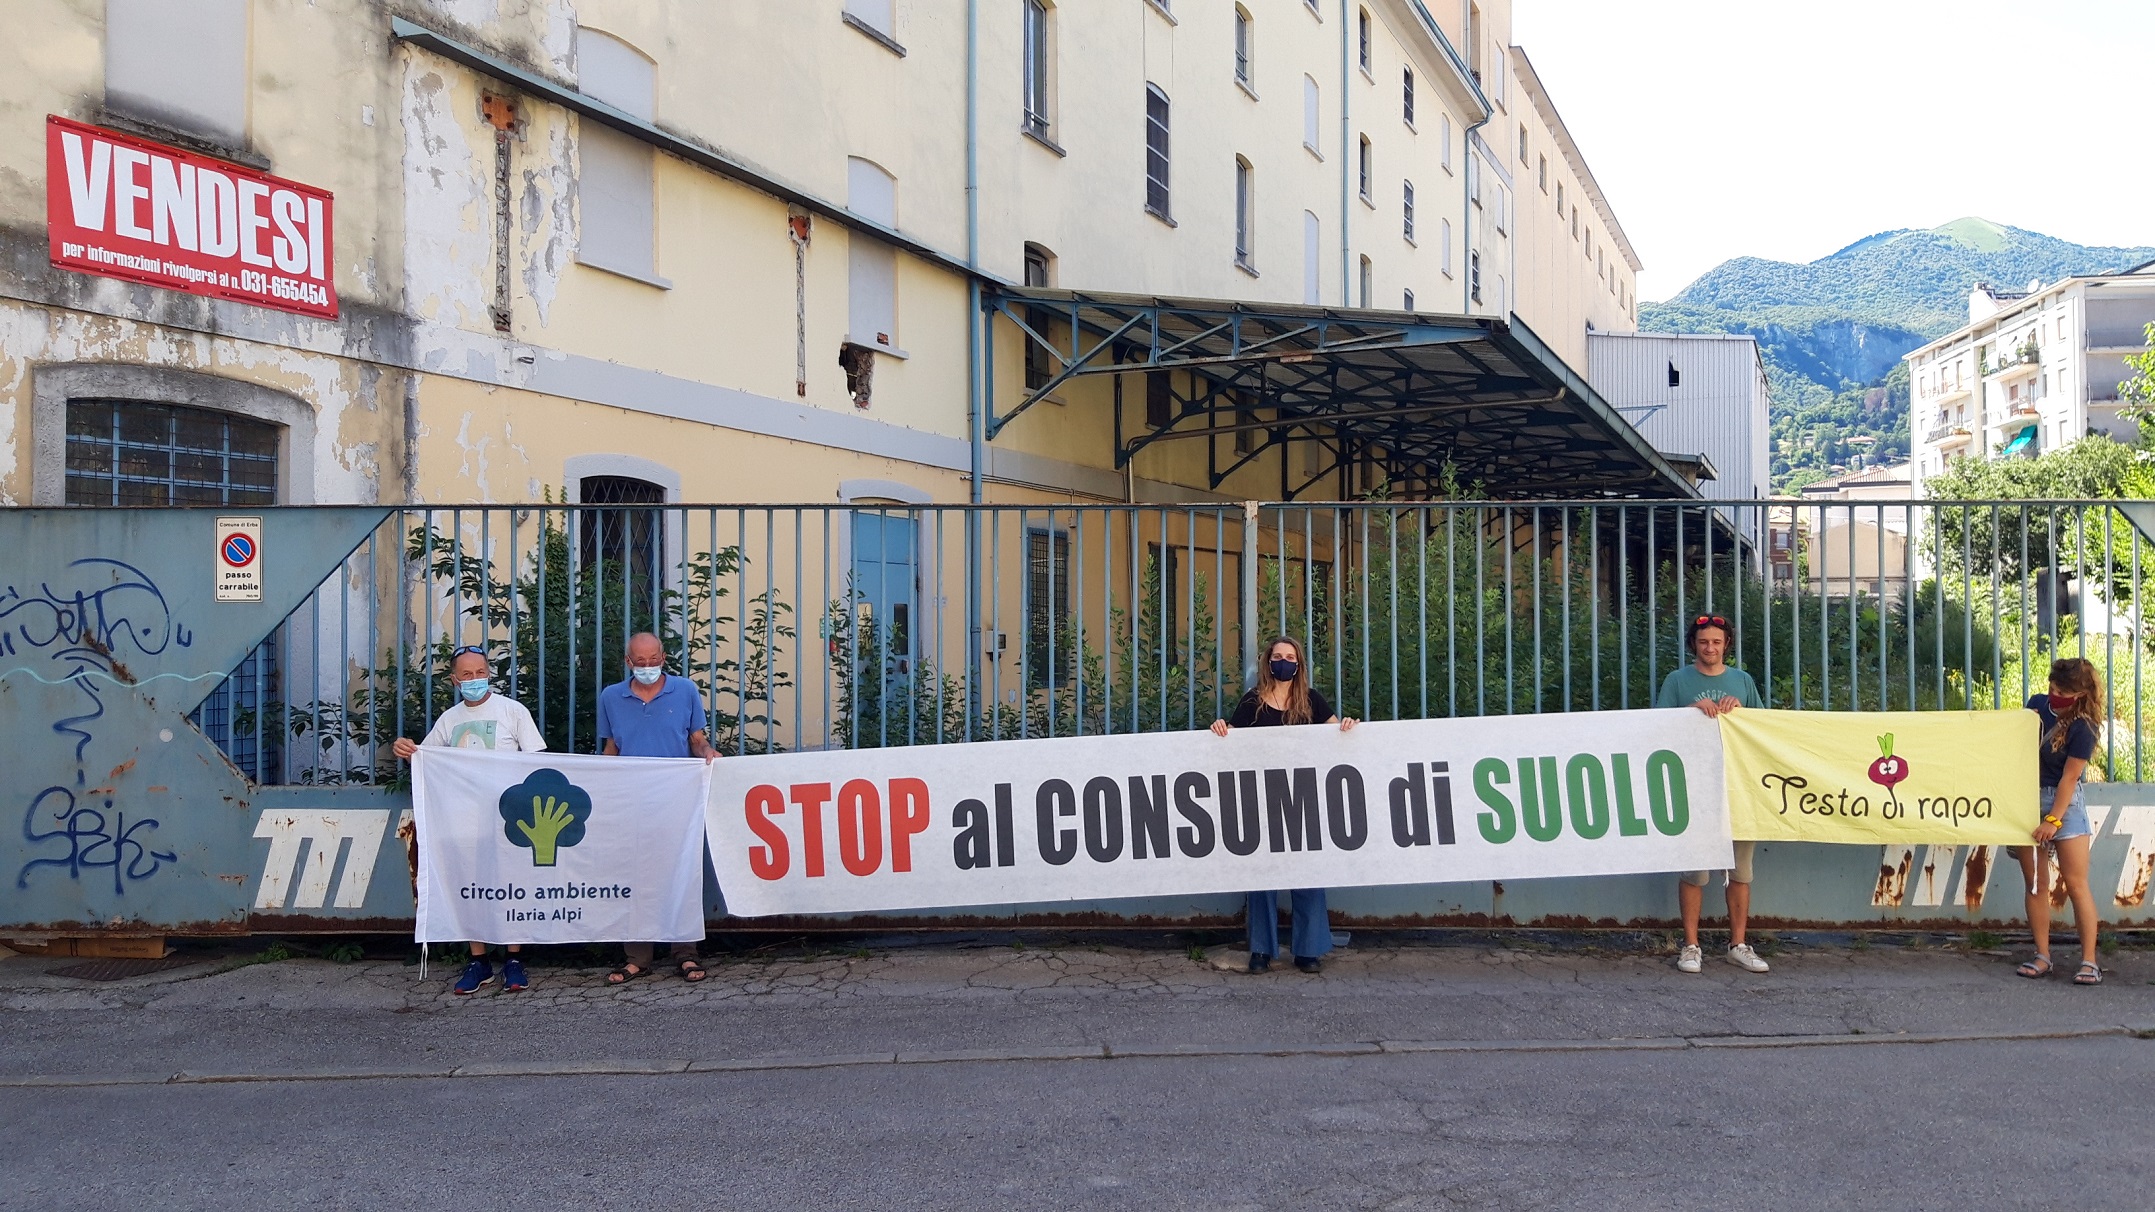 A Erba prosegue la campagna contro il consumo di suolo - Il prof. Paolo Pileri ha invitato ad attivarsi contro la cementificazione